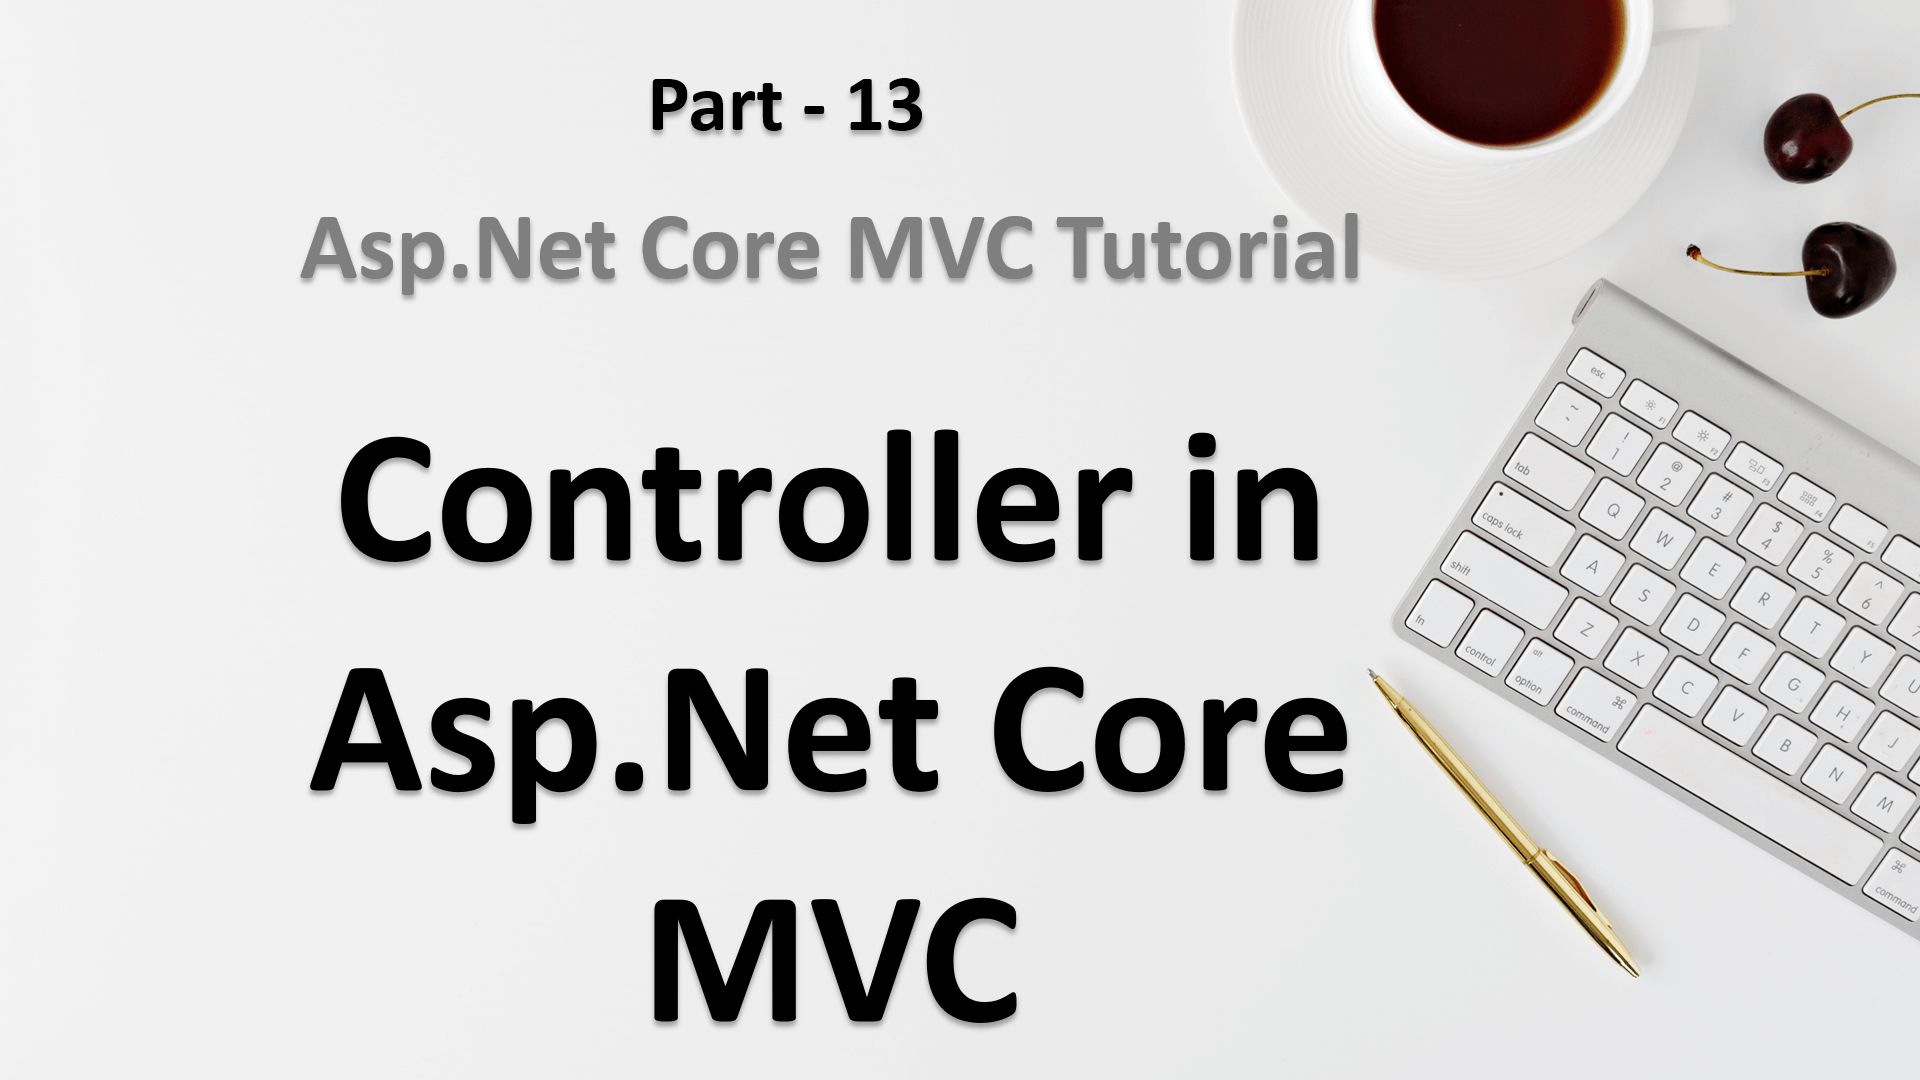 Controller in Asp.Net Core MVC | Asp.Net Core tutorial